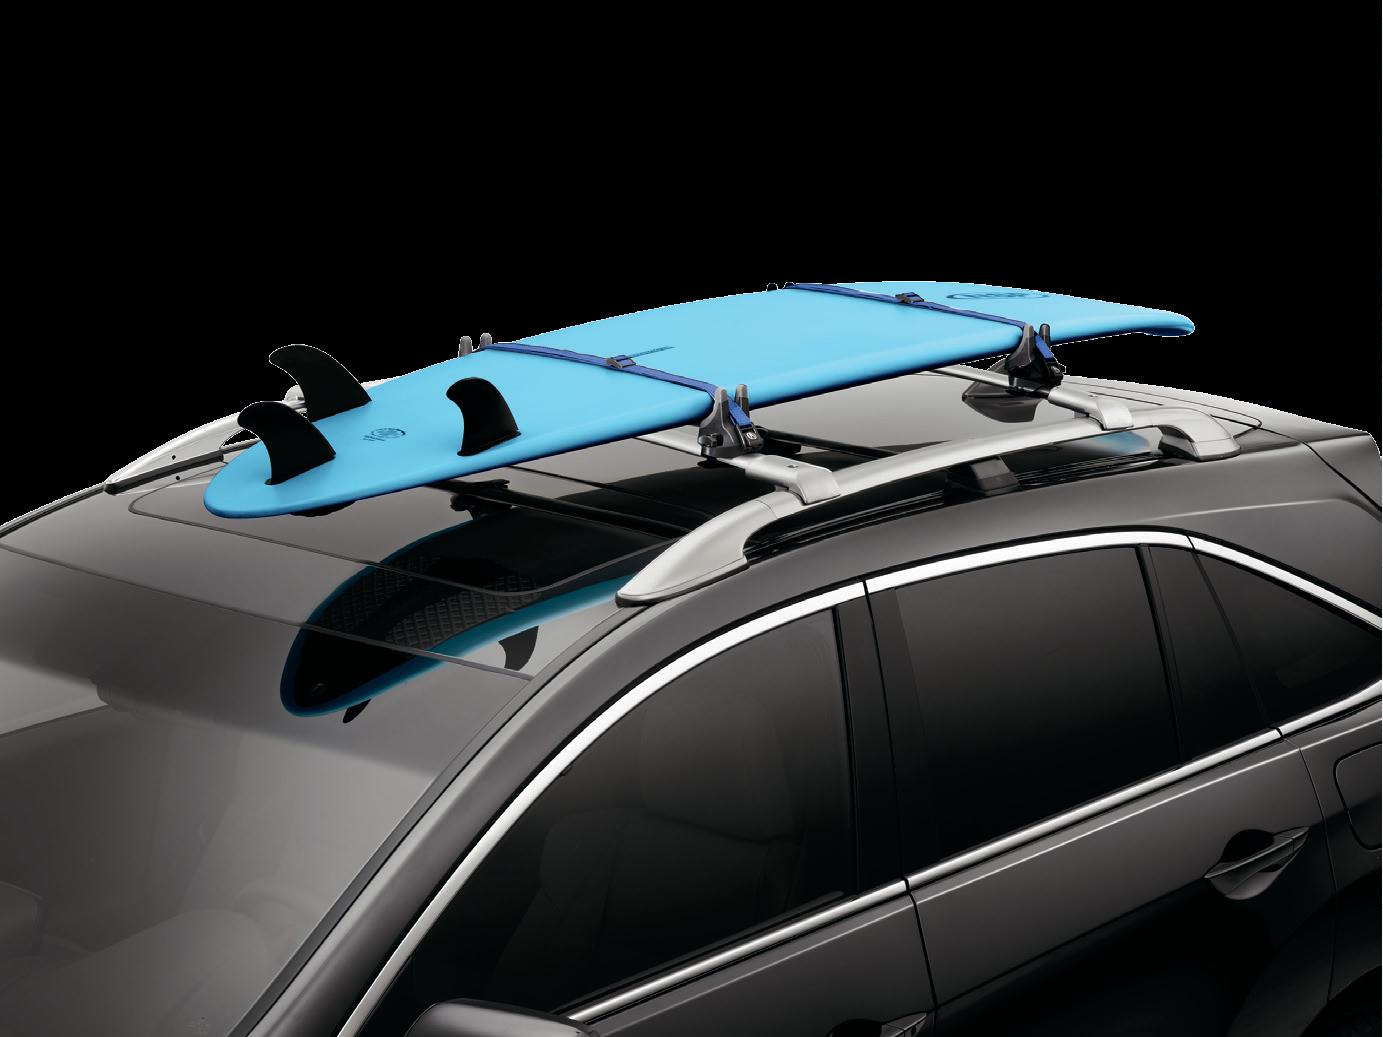 2017 Acura RDX Surfboard Attachment 08L05-TA1-200